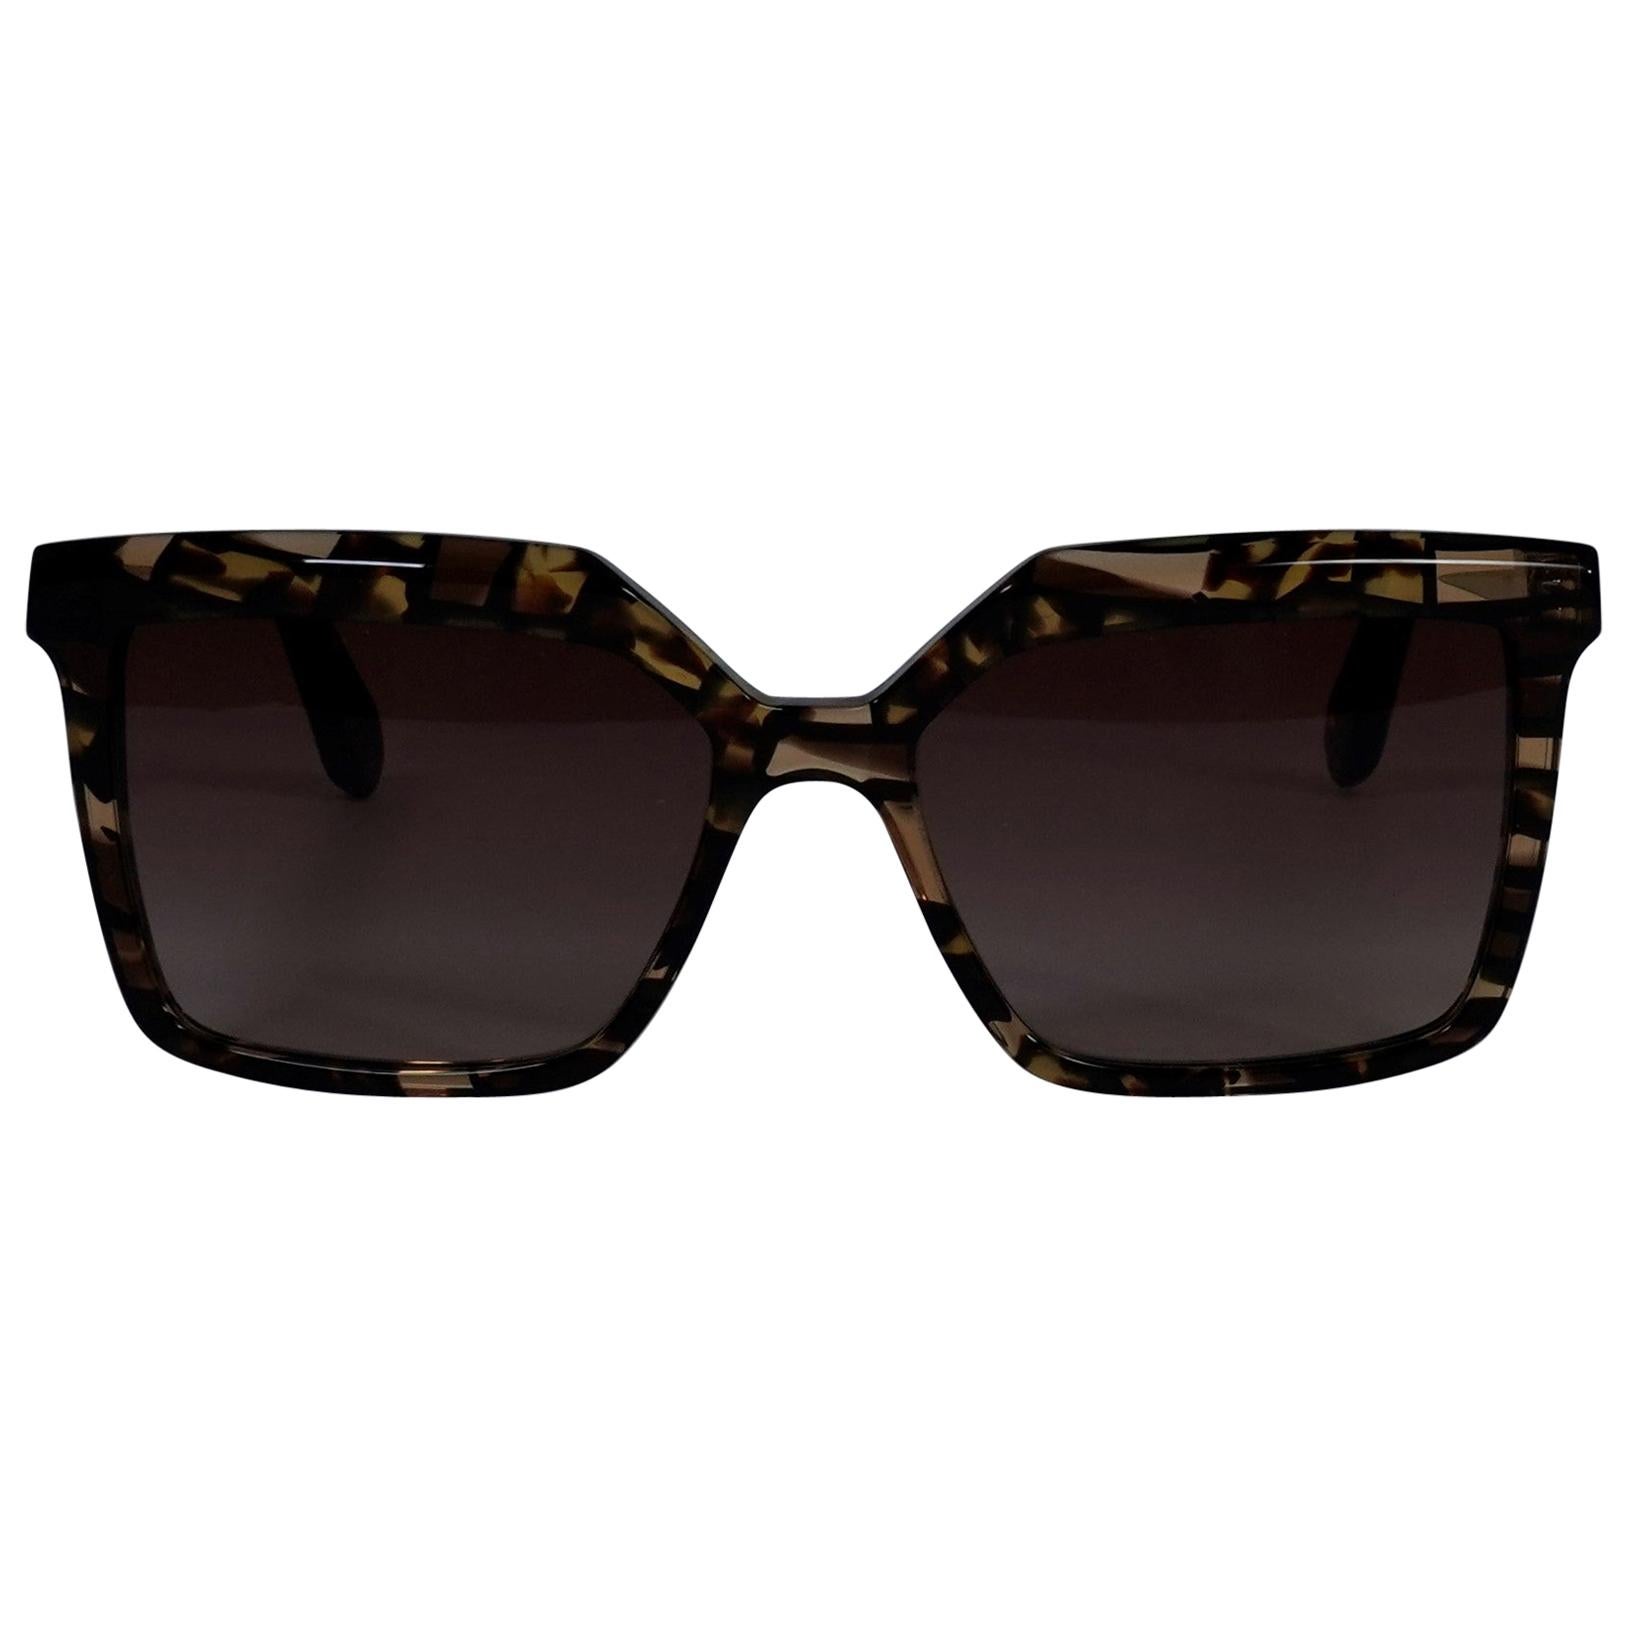 Aru Eyewear brown sunglasses